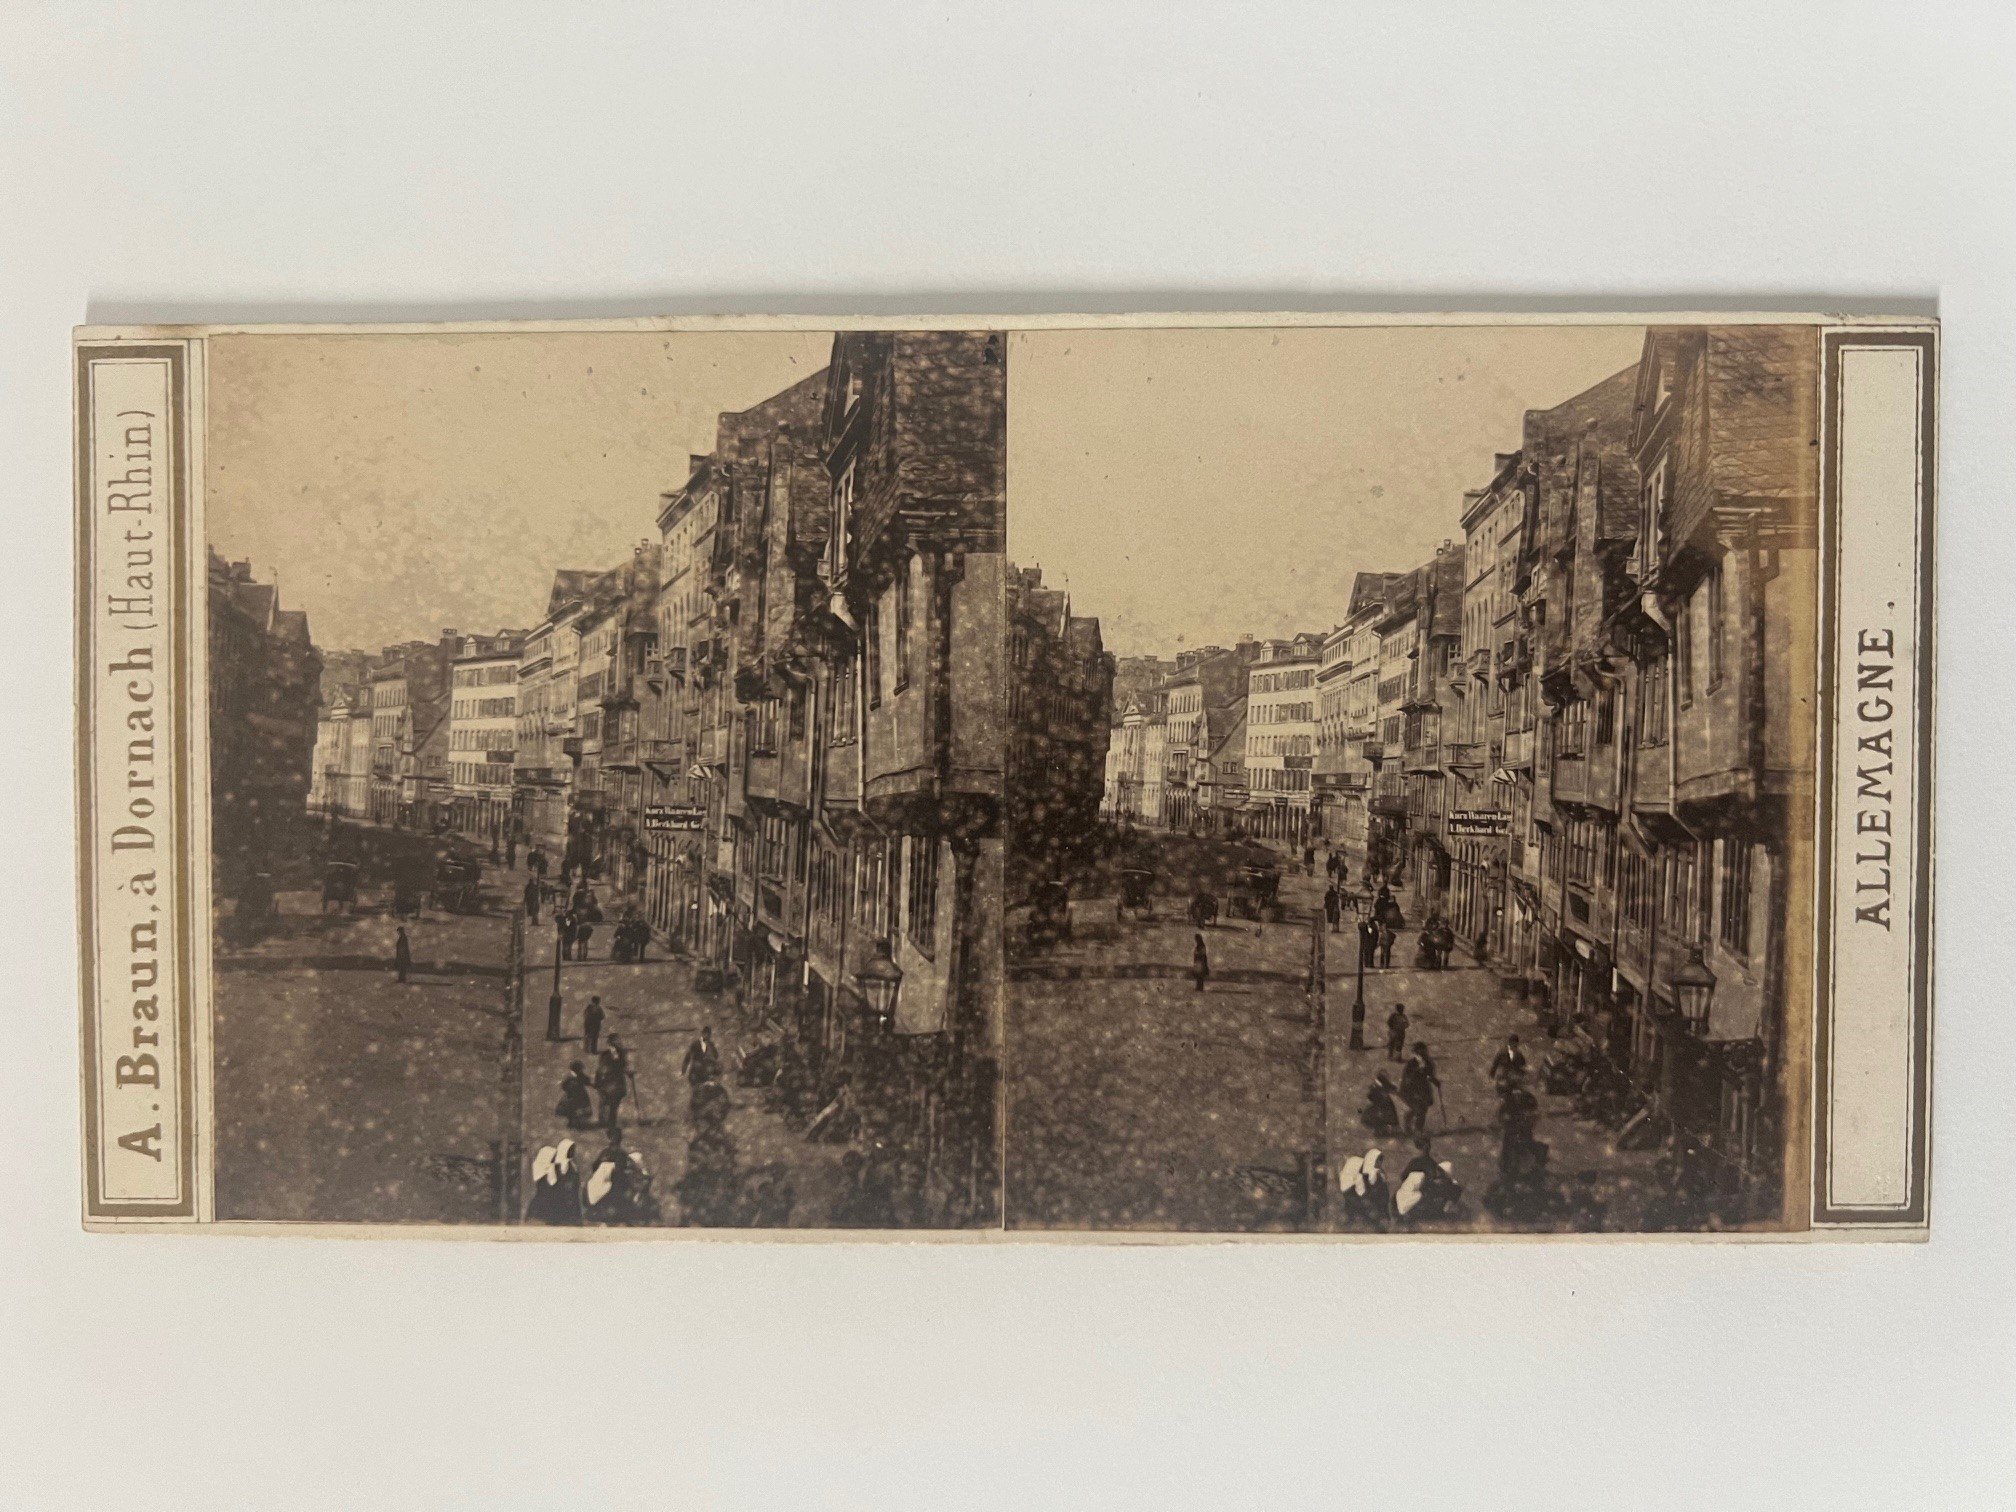 Stereobild, Adolphe Braun, Frankfurt, Nr. 2458, Die Zeil, ca. 1865. (Taunus-Rhein-Main - Regionalgeschichtliche Sammlung Dr. Stefan Naas CC BY-NC-SA)